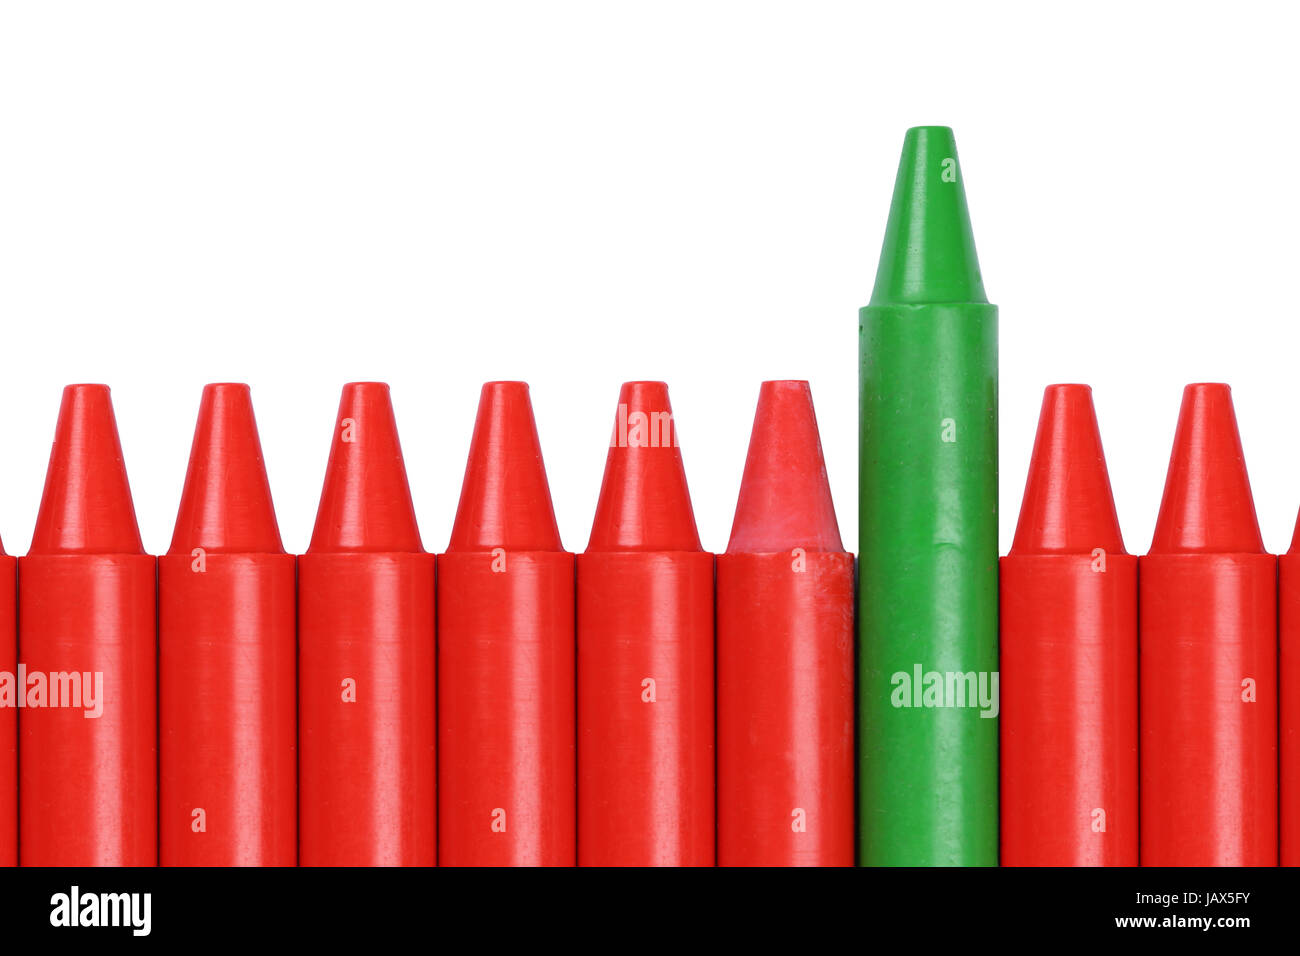 Ein grüner Wachsmalstift ragt aus einer Reihe roter Buntstifte heraus Stock Photo